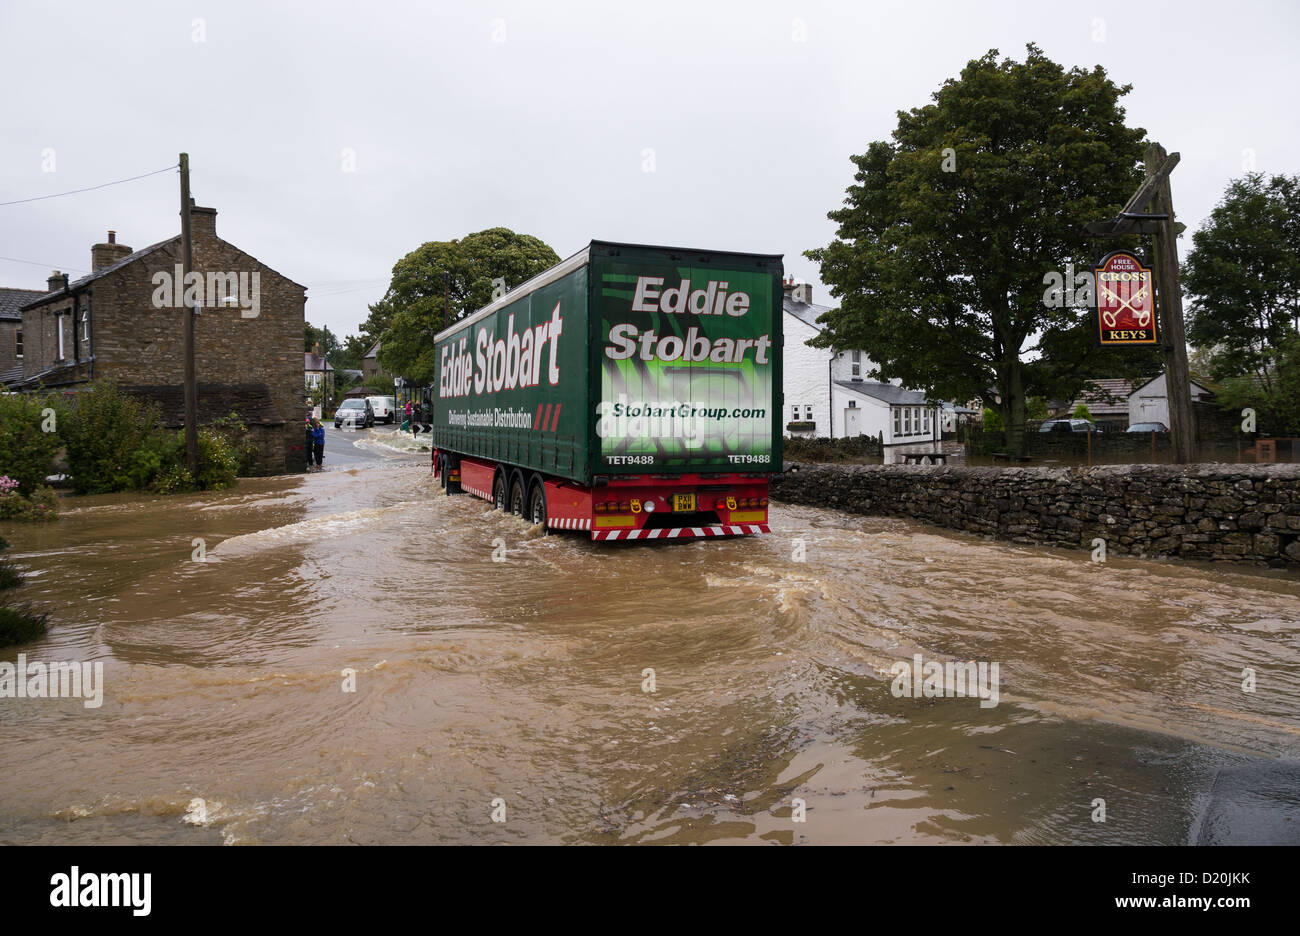 Eddie Sobart camion roulant dans l'eau d'inondation dans la région de Bellerby, Yorkshire du Nord, 2013 Banque D'Images